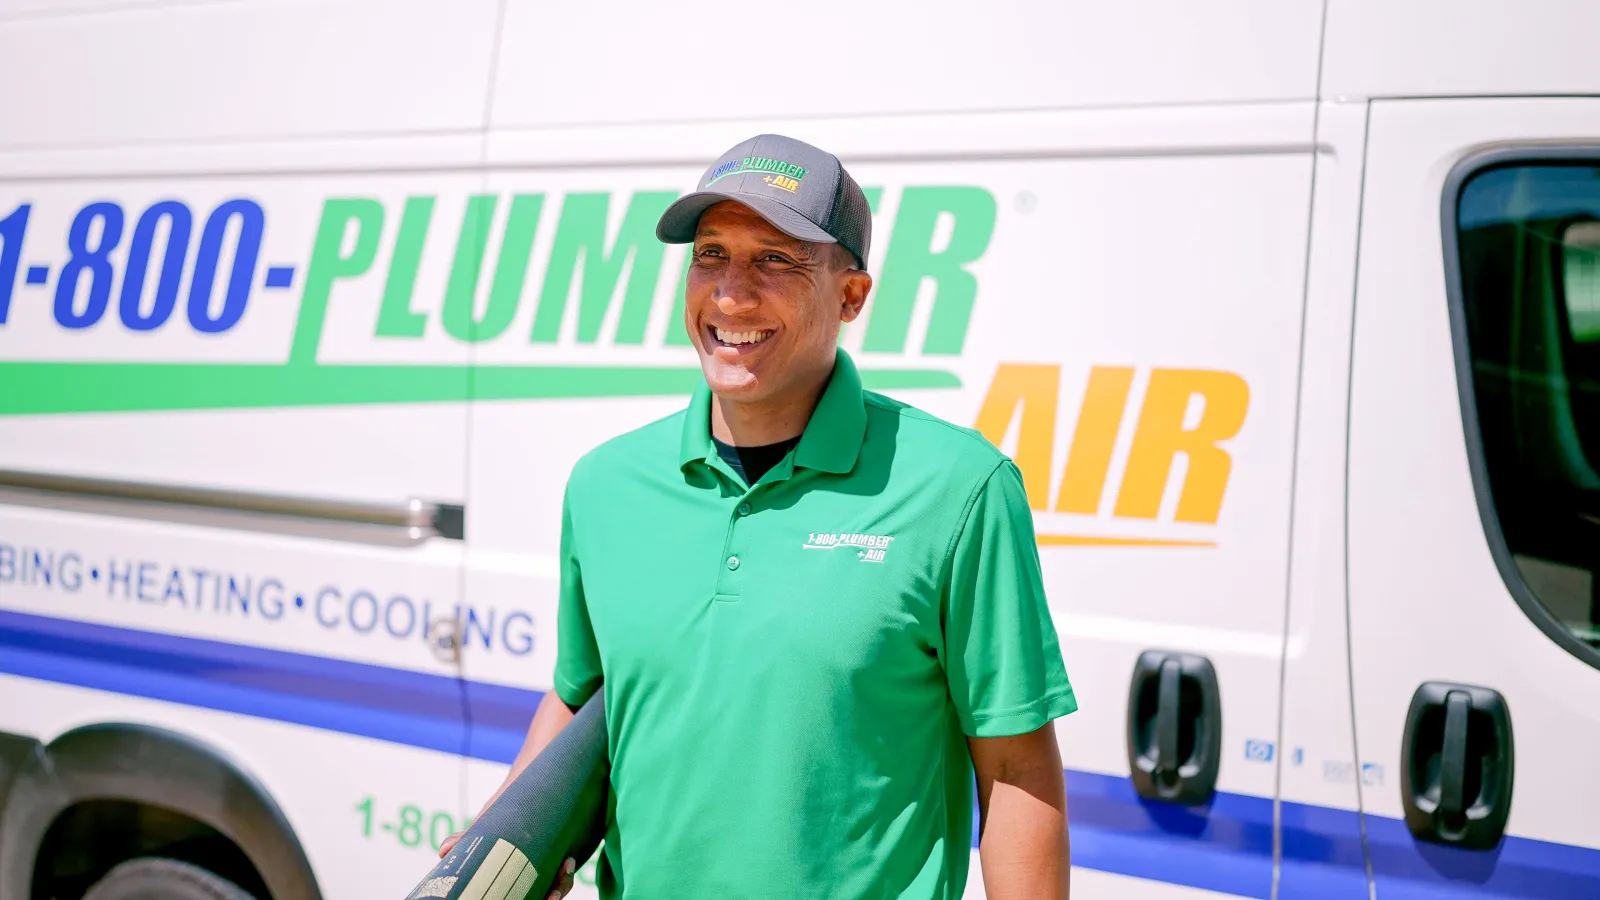 A Raleigh heat pump technician in front of a 1-800-Plumber +Air van